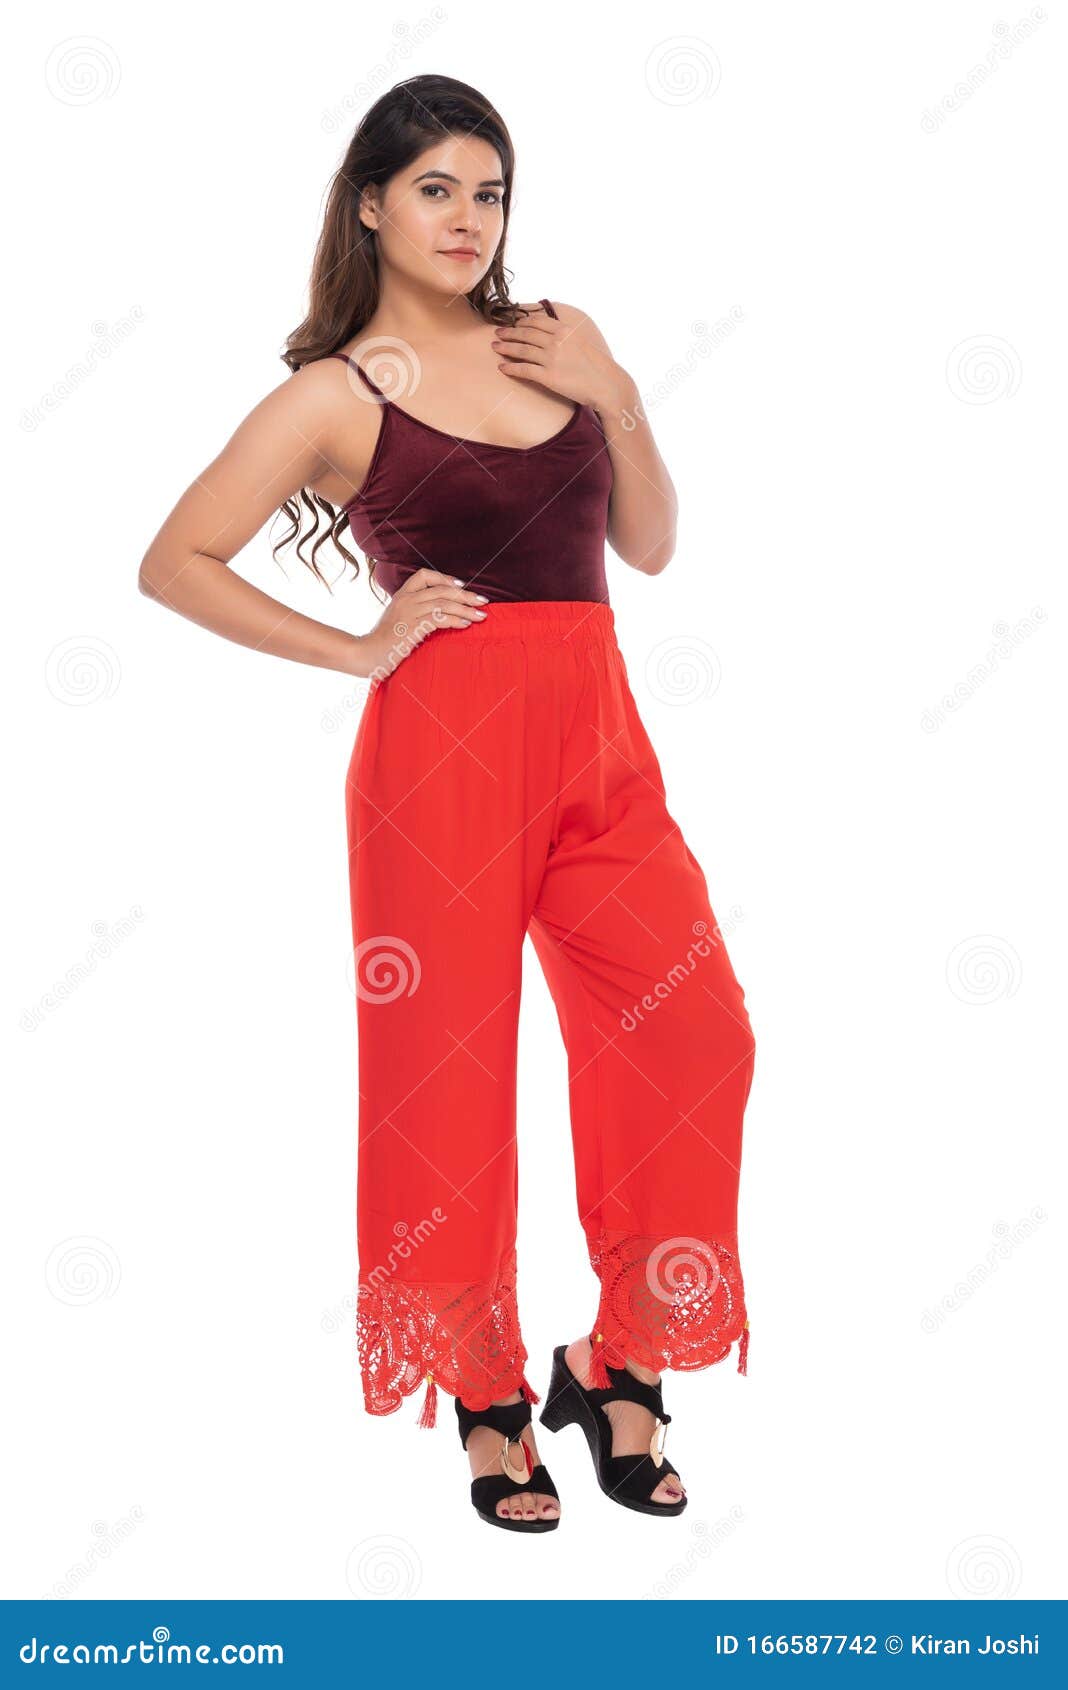 Indiano Você Garota Com Camisole De Veludo Vermelho E Desajeitada Com Pose  E Expressão Elegantes Foto de Stock - Imagem de branco, mulher: 166587742